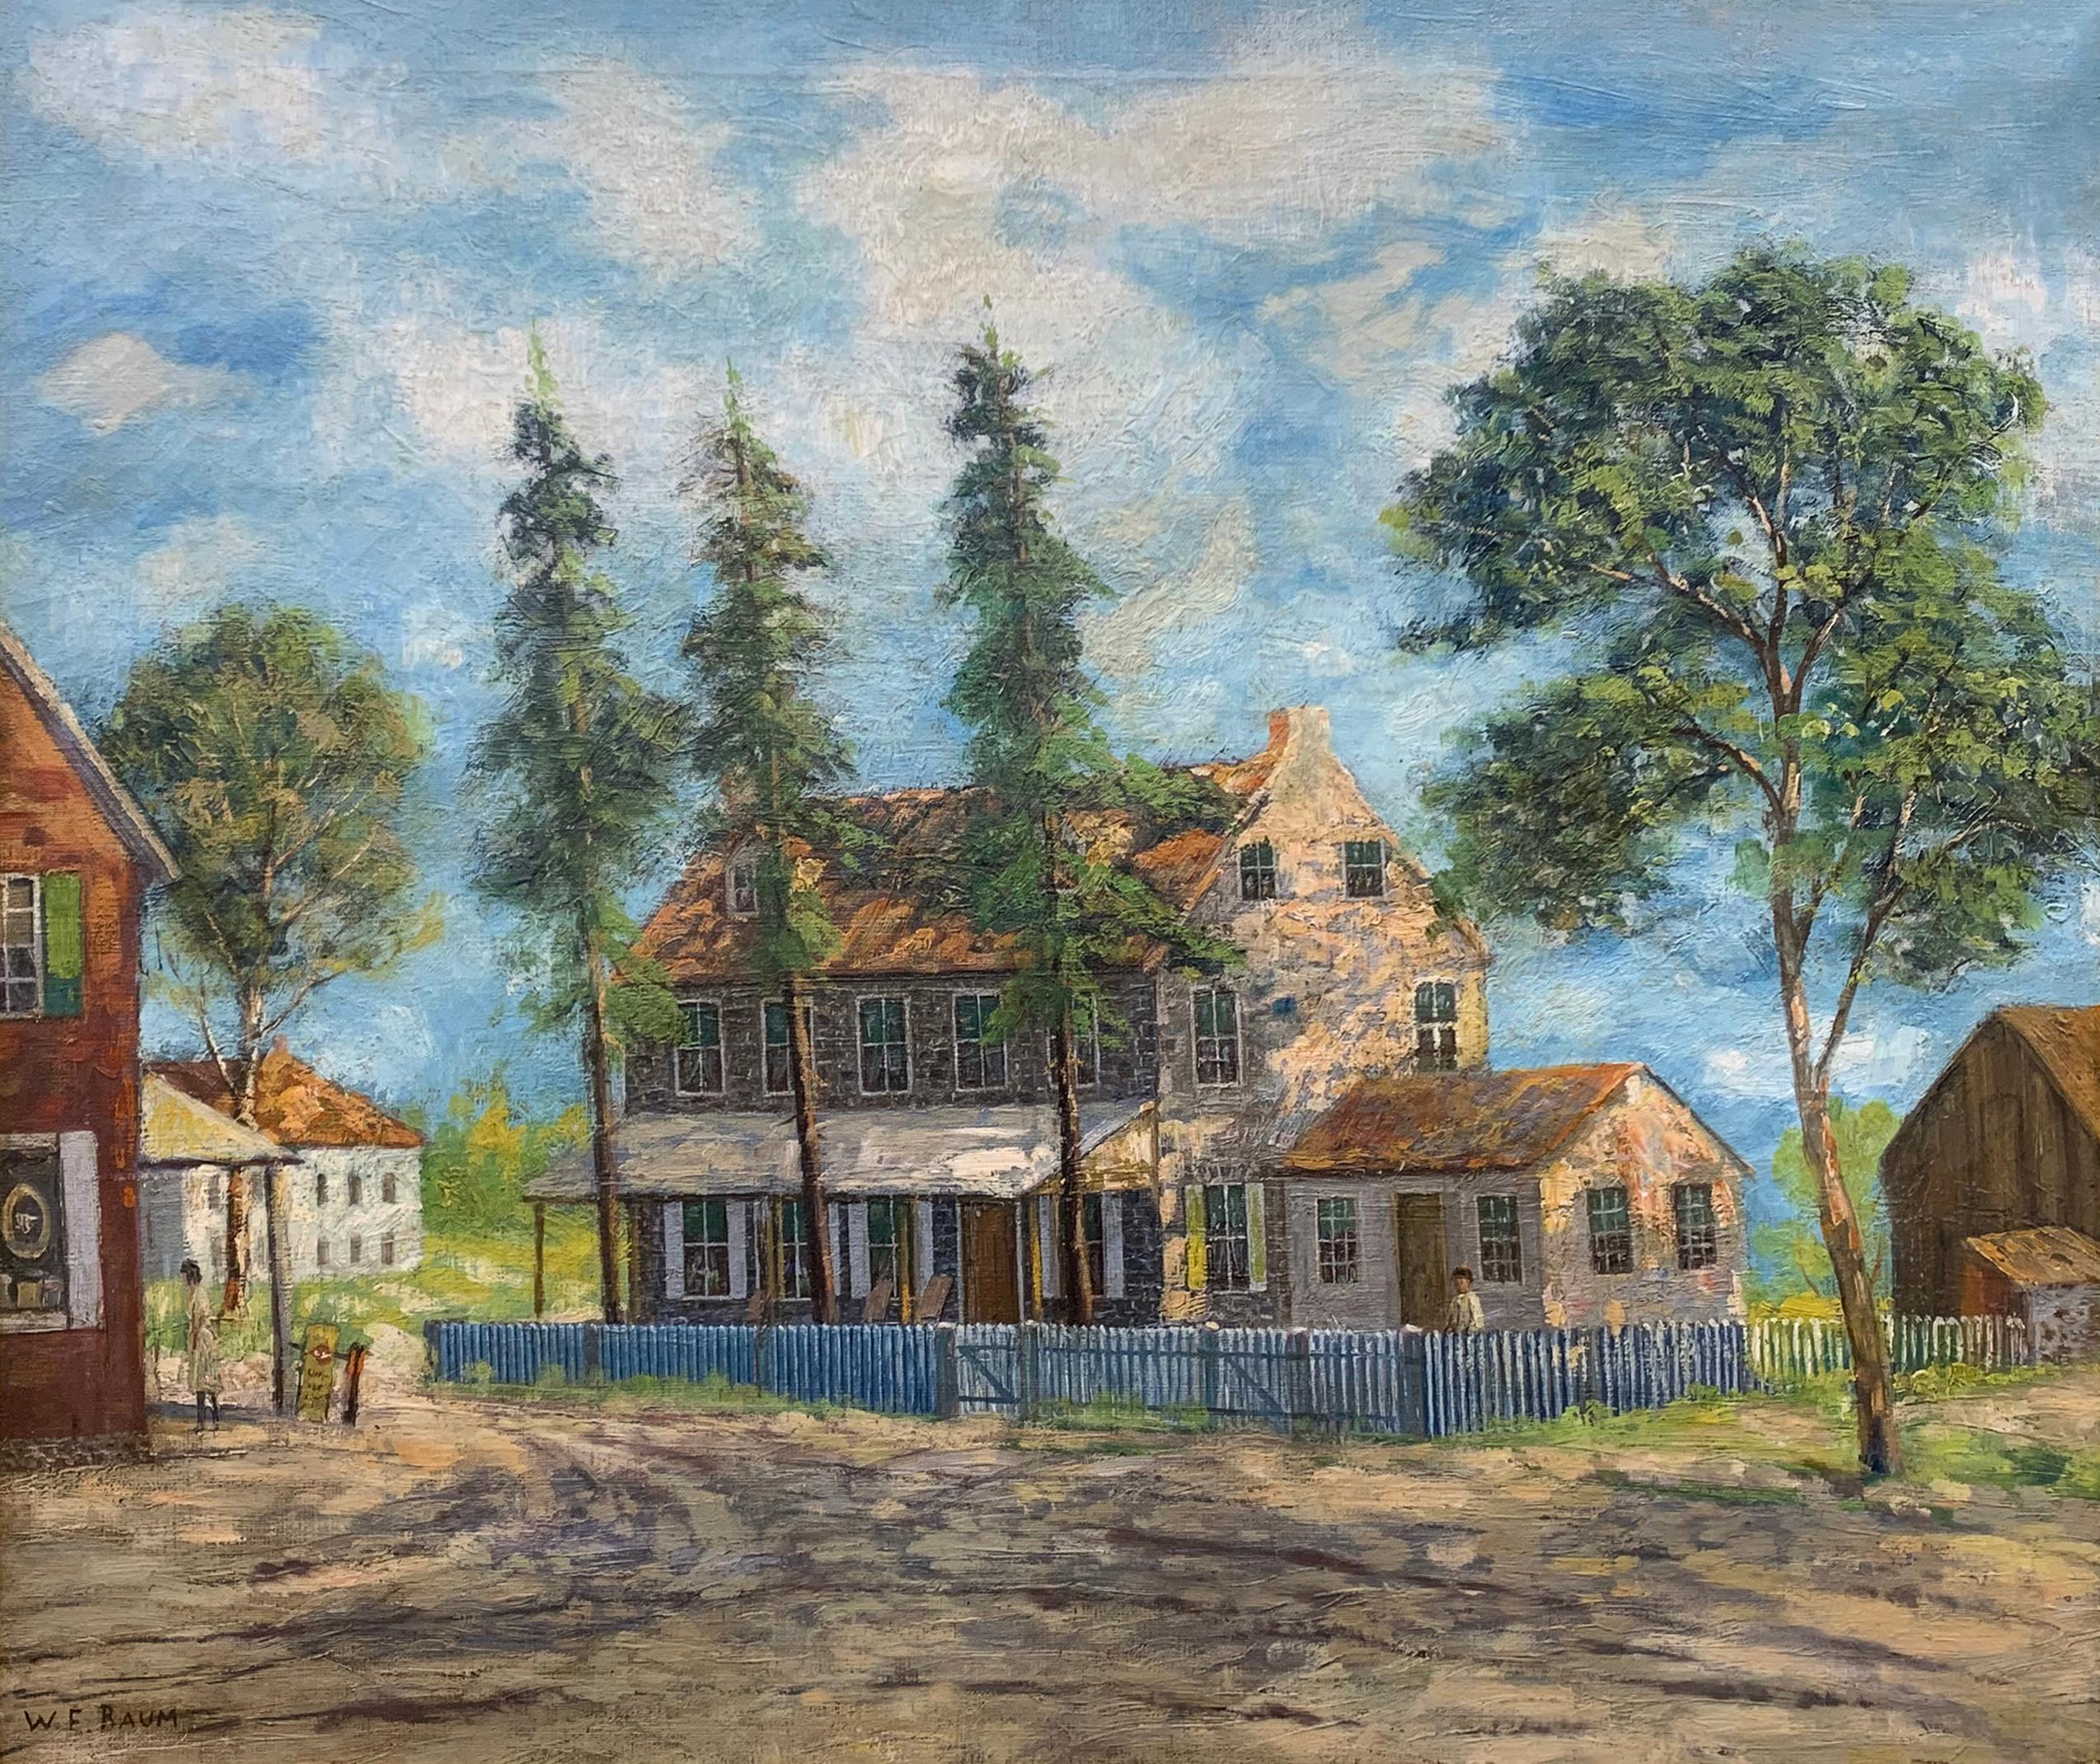 Walter Emerson Baum Landscape Painting – Impressionistische Sommerlandschaft im Stil eines alten Hauses, Regional Pennsylvania